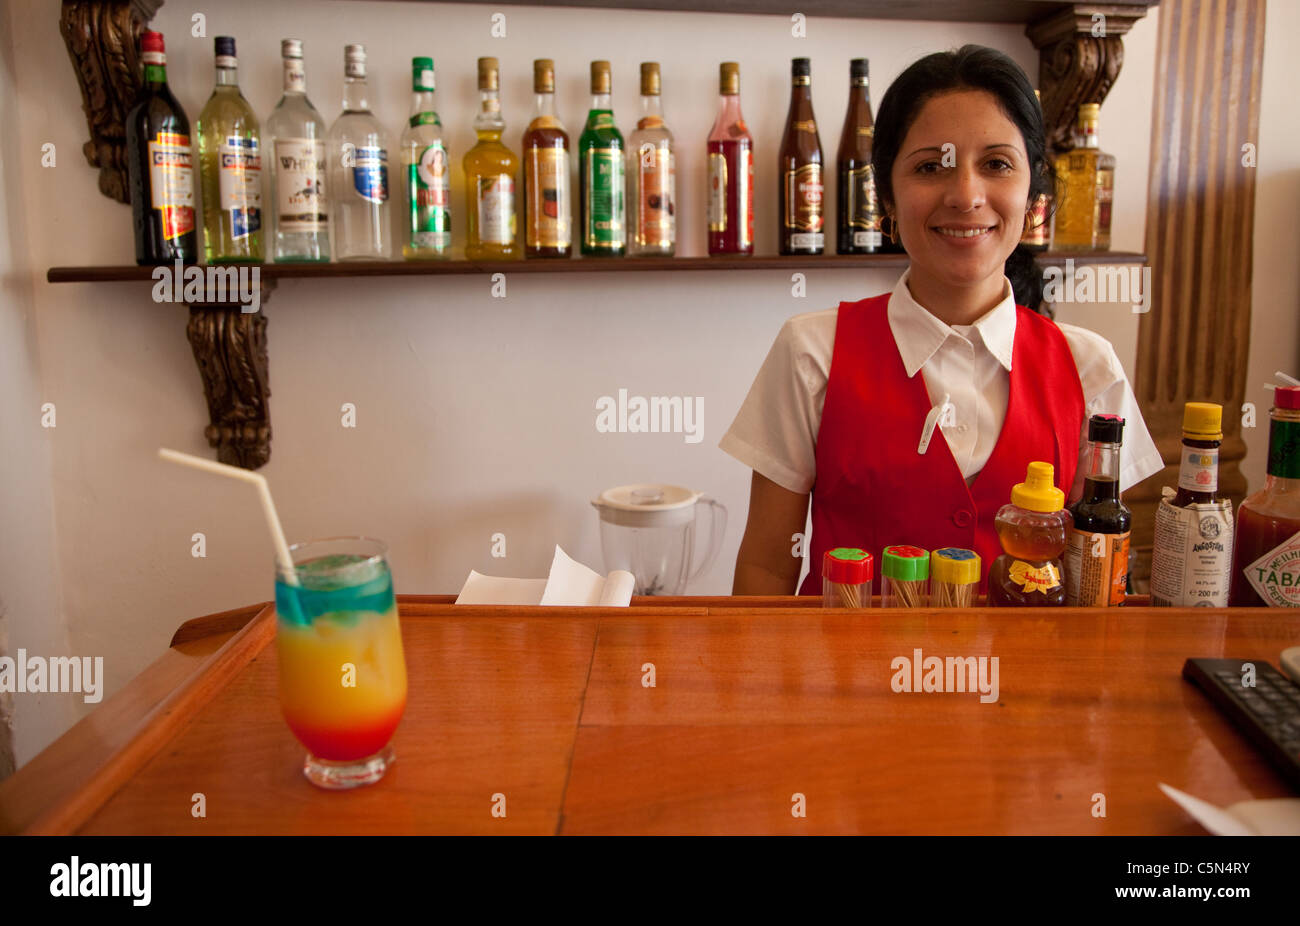 Kuba, Trinidad. Frau Barkeeper stolz auf ihre kolonialen Trinidad, ein alkoholisches Mischgetränk. Stockfoto